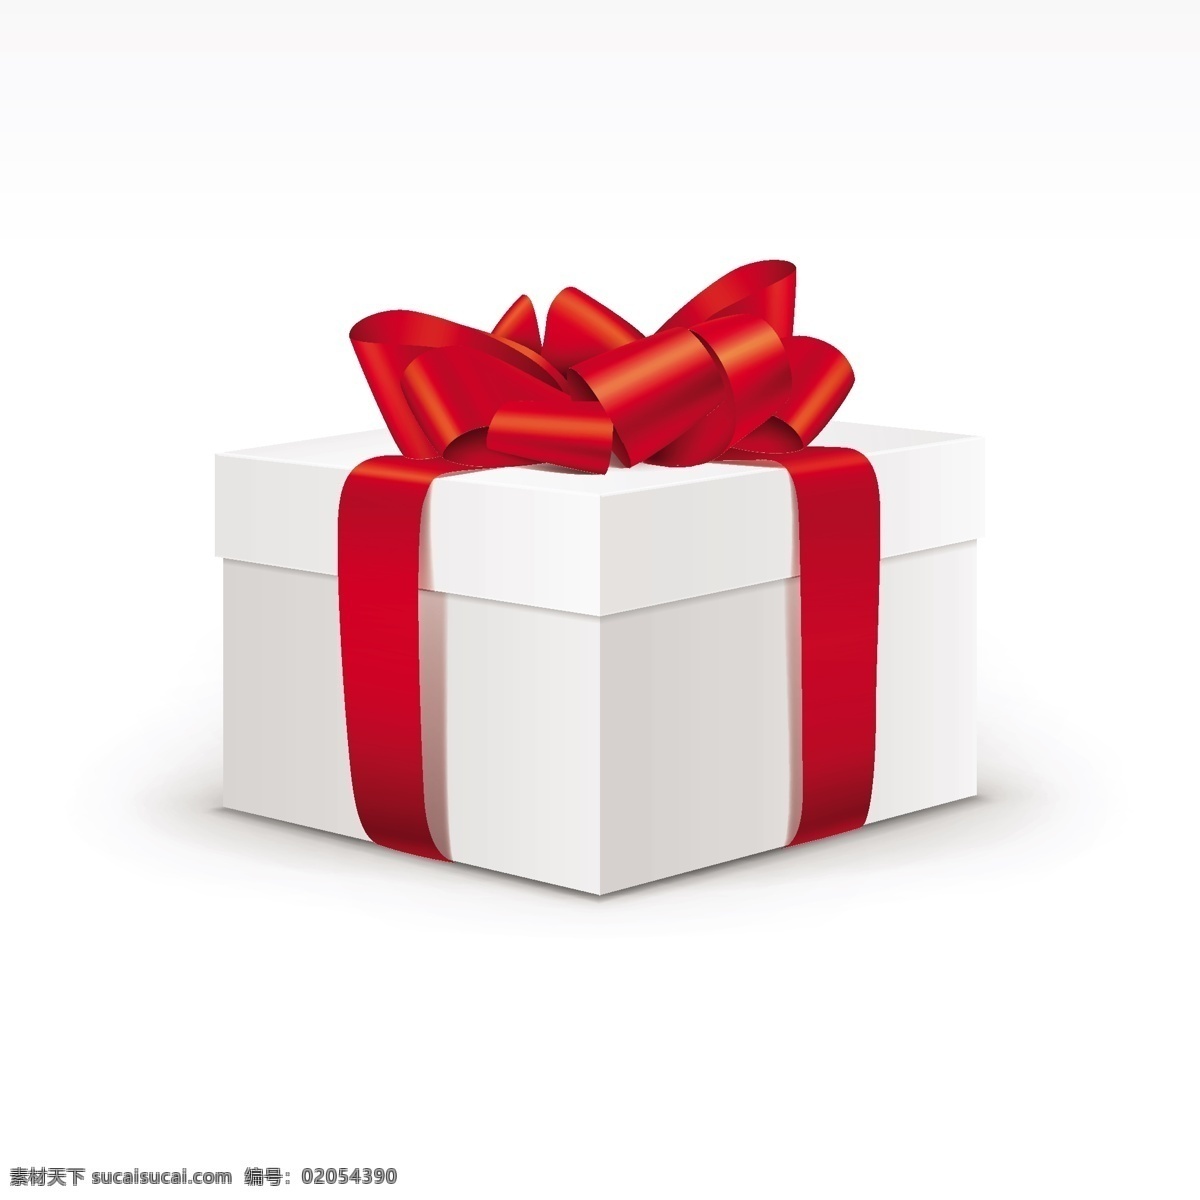 节日 红色 缎带 礼品盒 包装 精美礼盒 红色缎带 素白礼品盒 节日礼品盒 文化艺术 节日庆祝